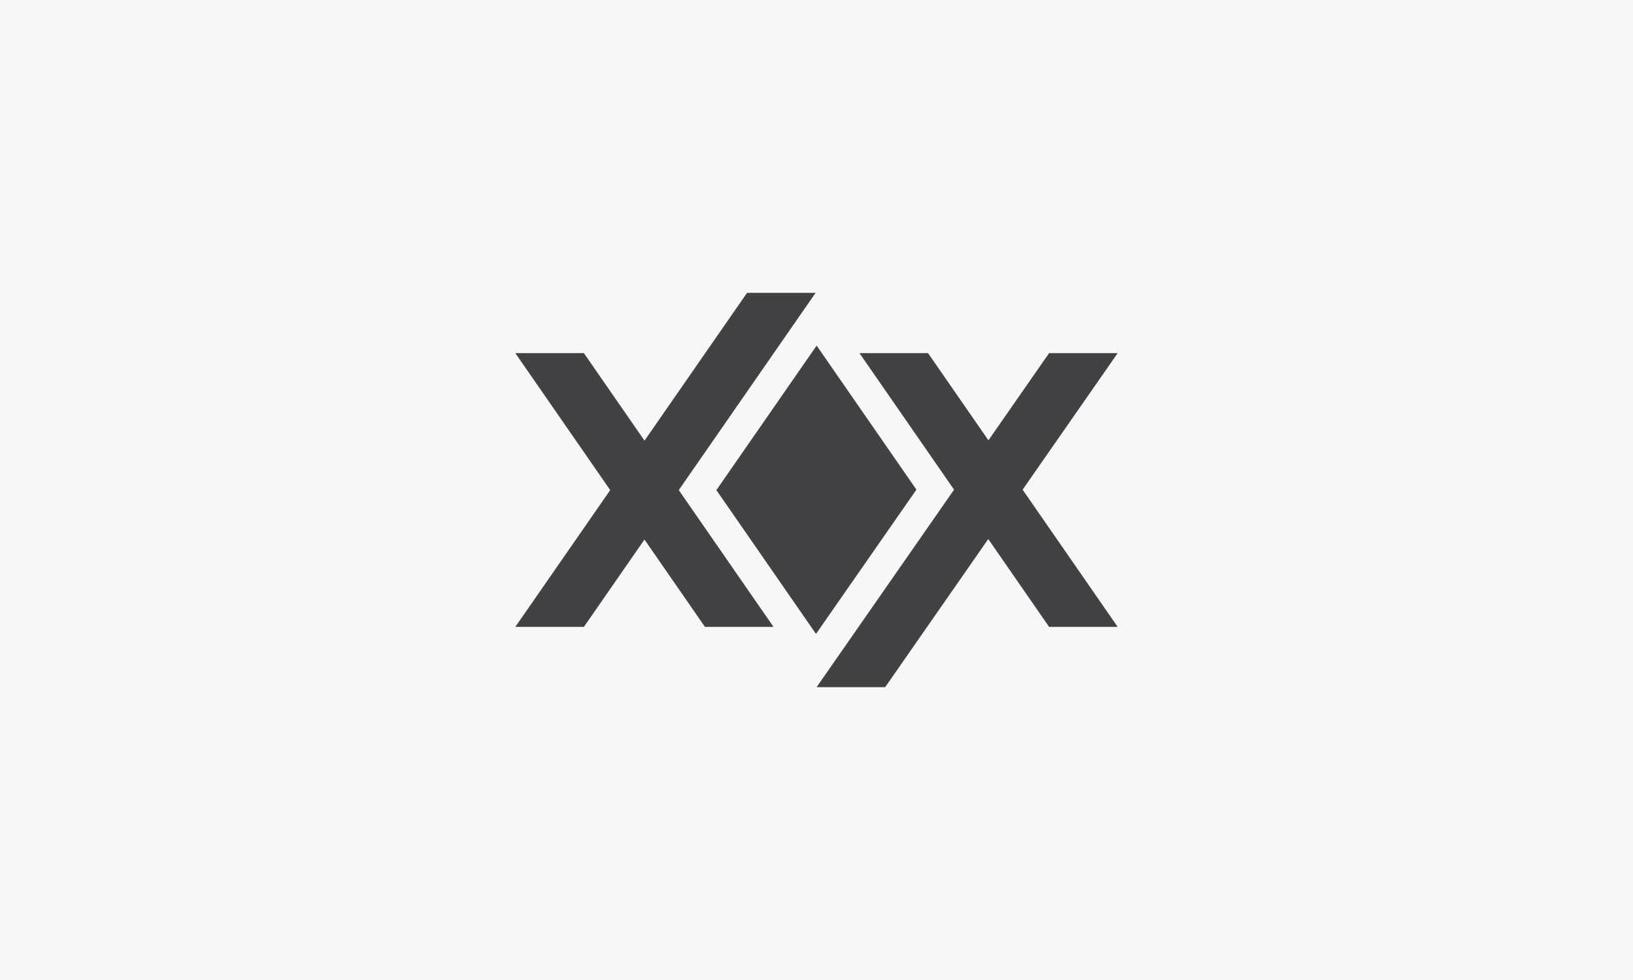 xx o x logo del diamante isolato su sfondo hwite. vettore